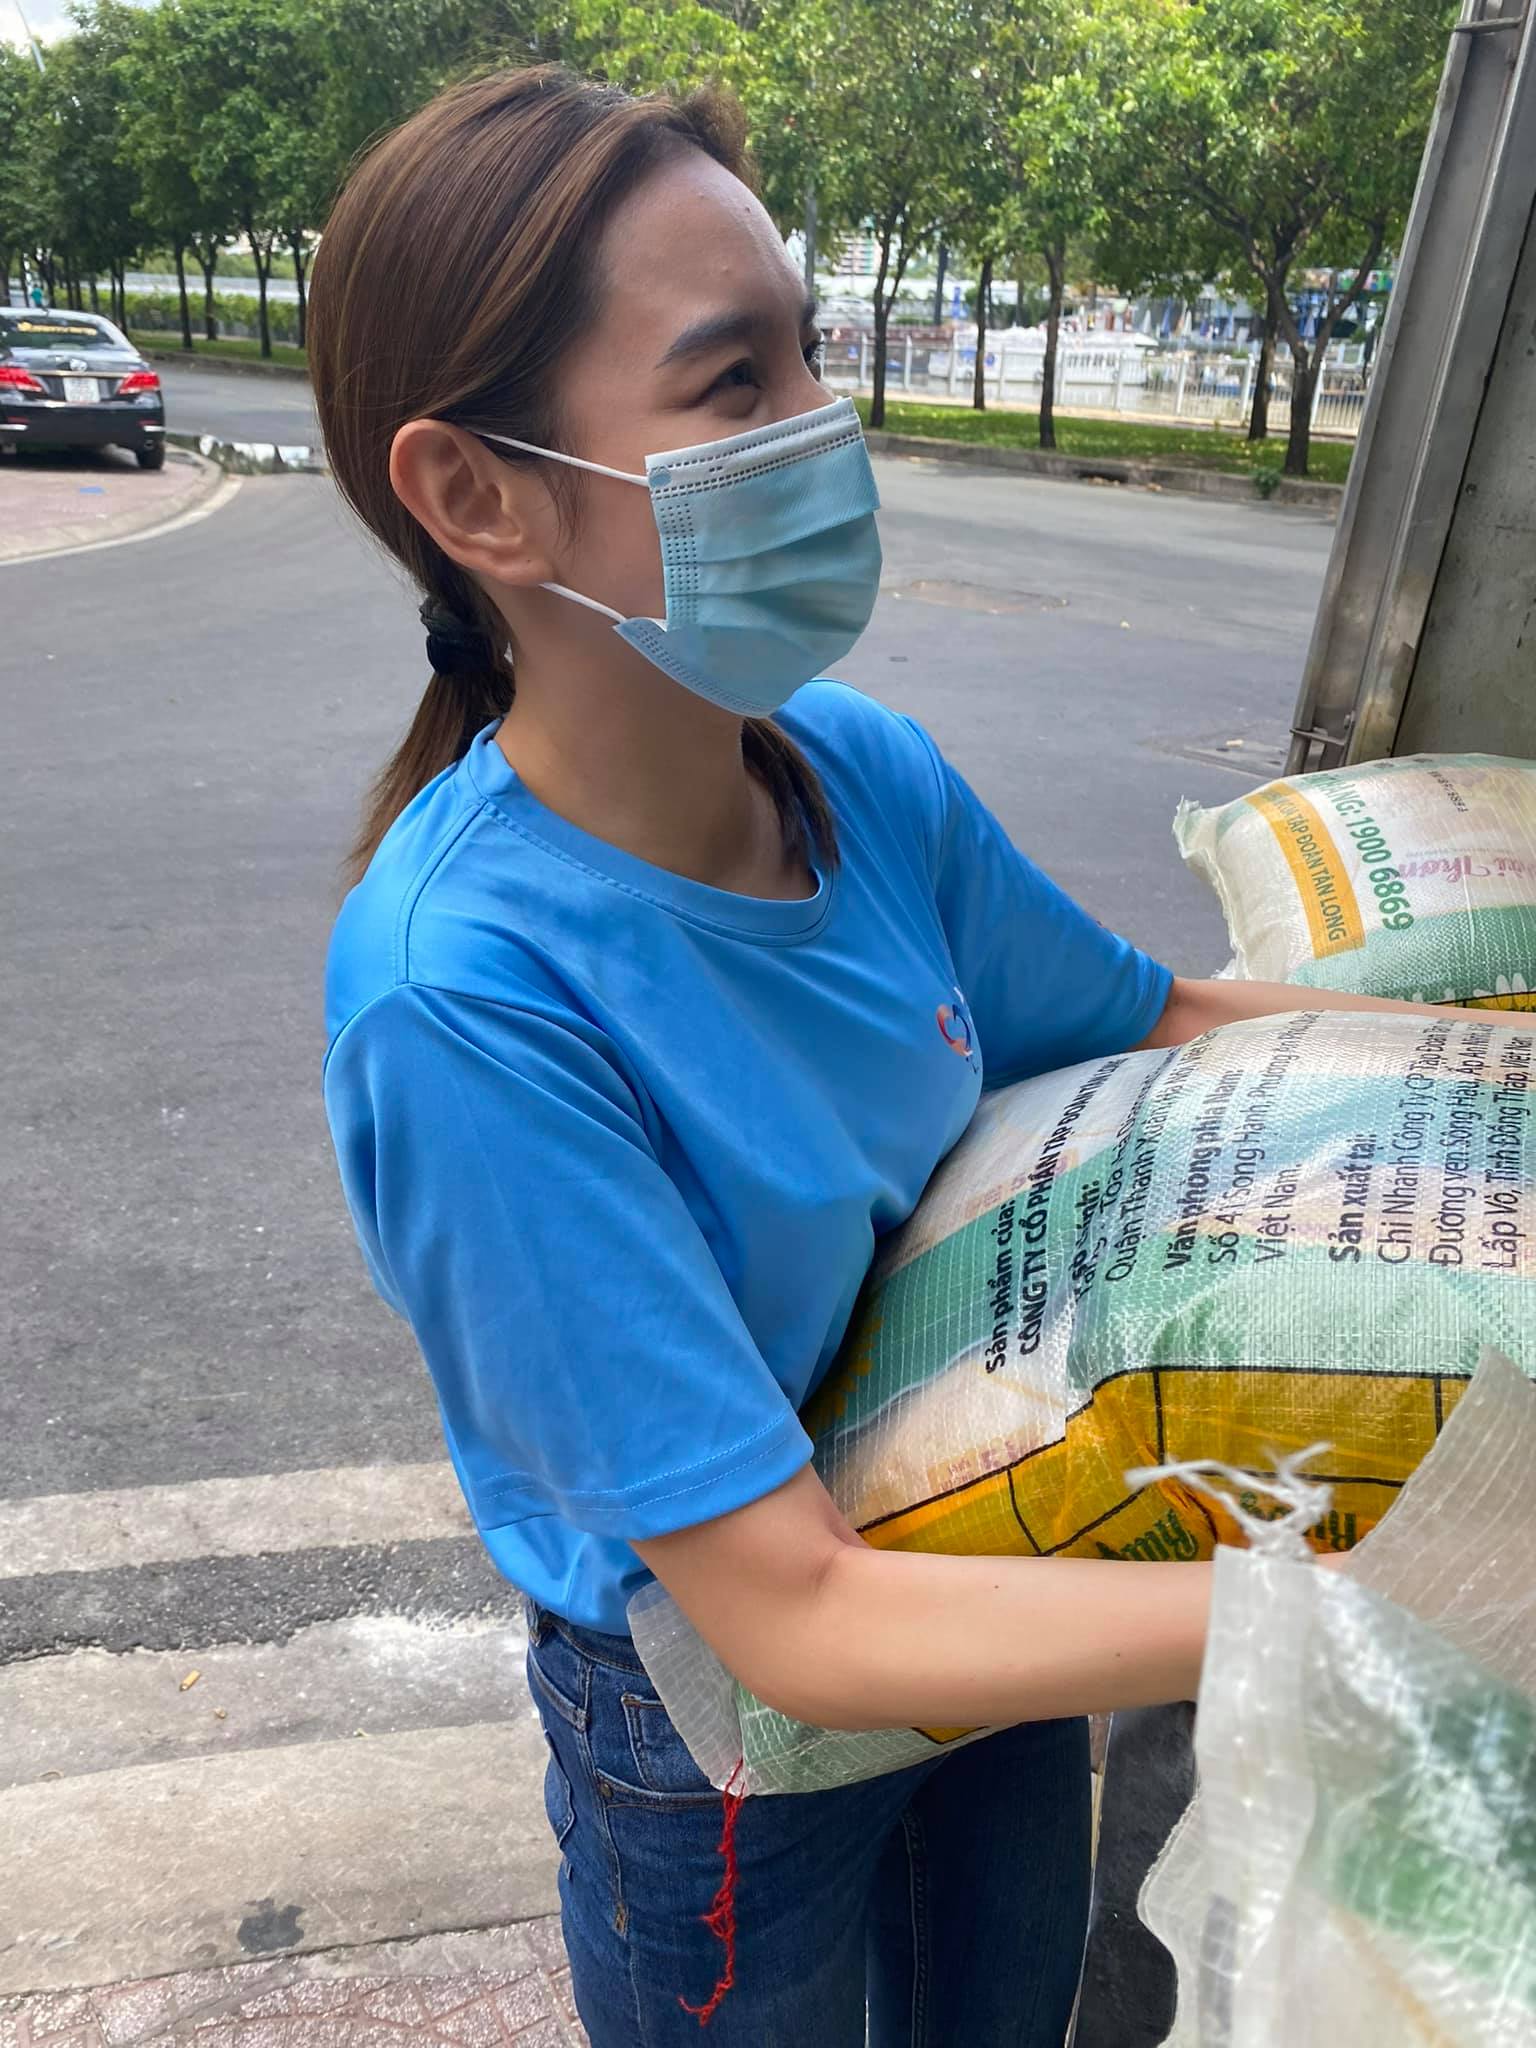 Miss Grand Việt Nam 2021 dùng tiền sinh nhật mua máy thở và 5 tấn gạo hỗ trợ bà con nghèo